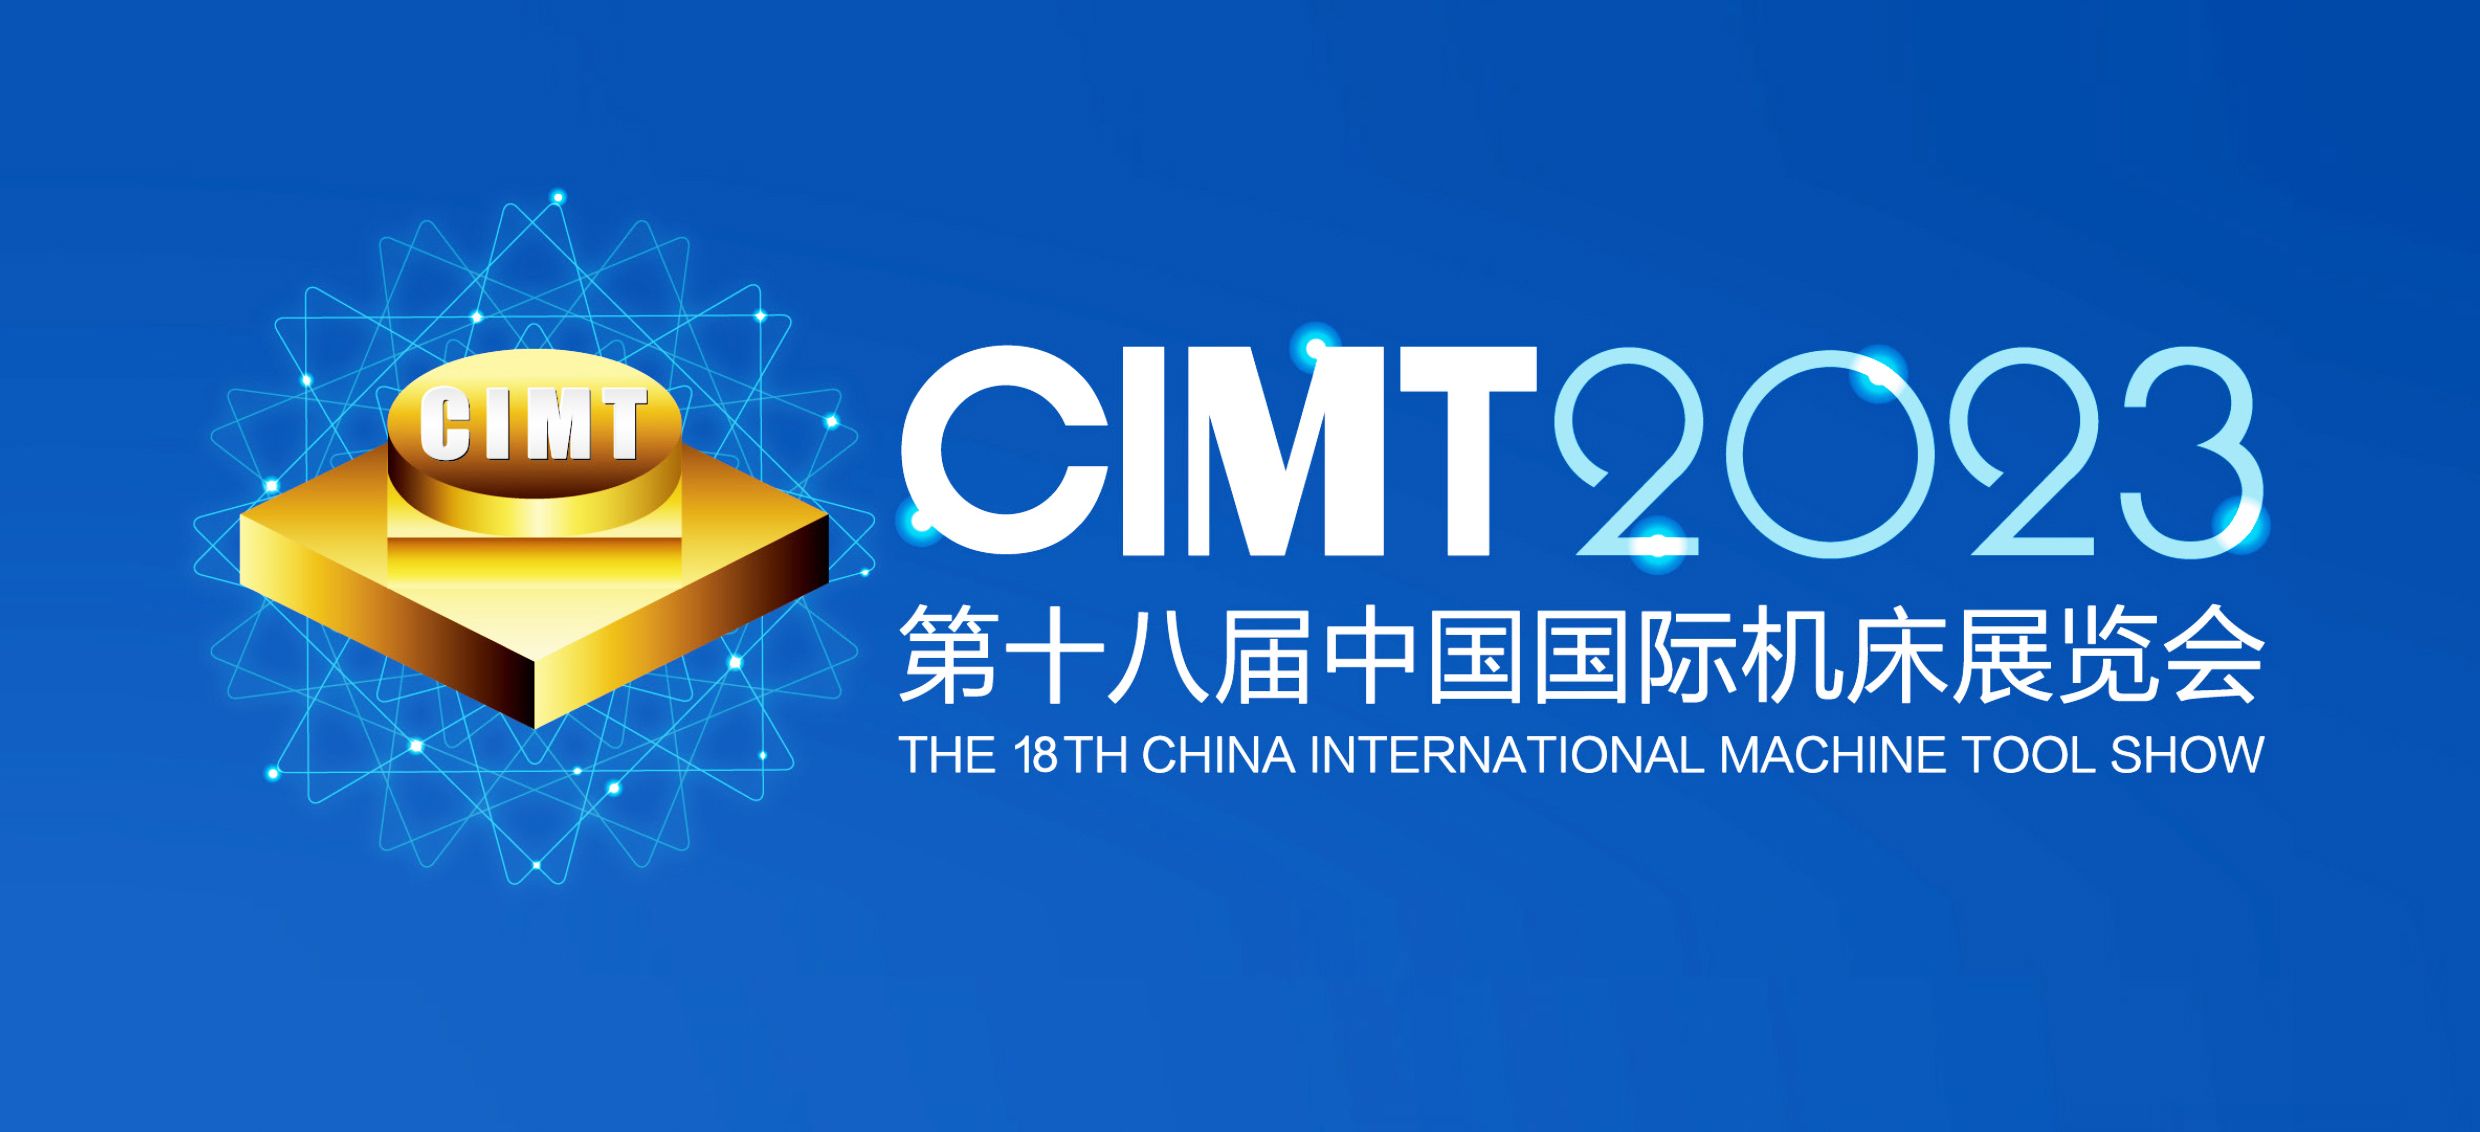 展會邀請|4月10-15第十八屆中國國際機床展覽會通錦精密與您相約北京！